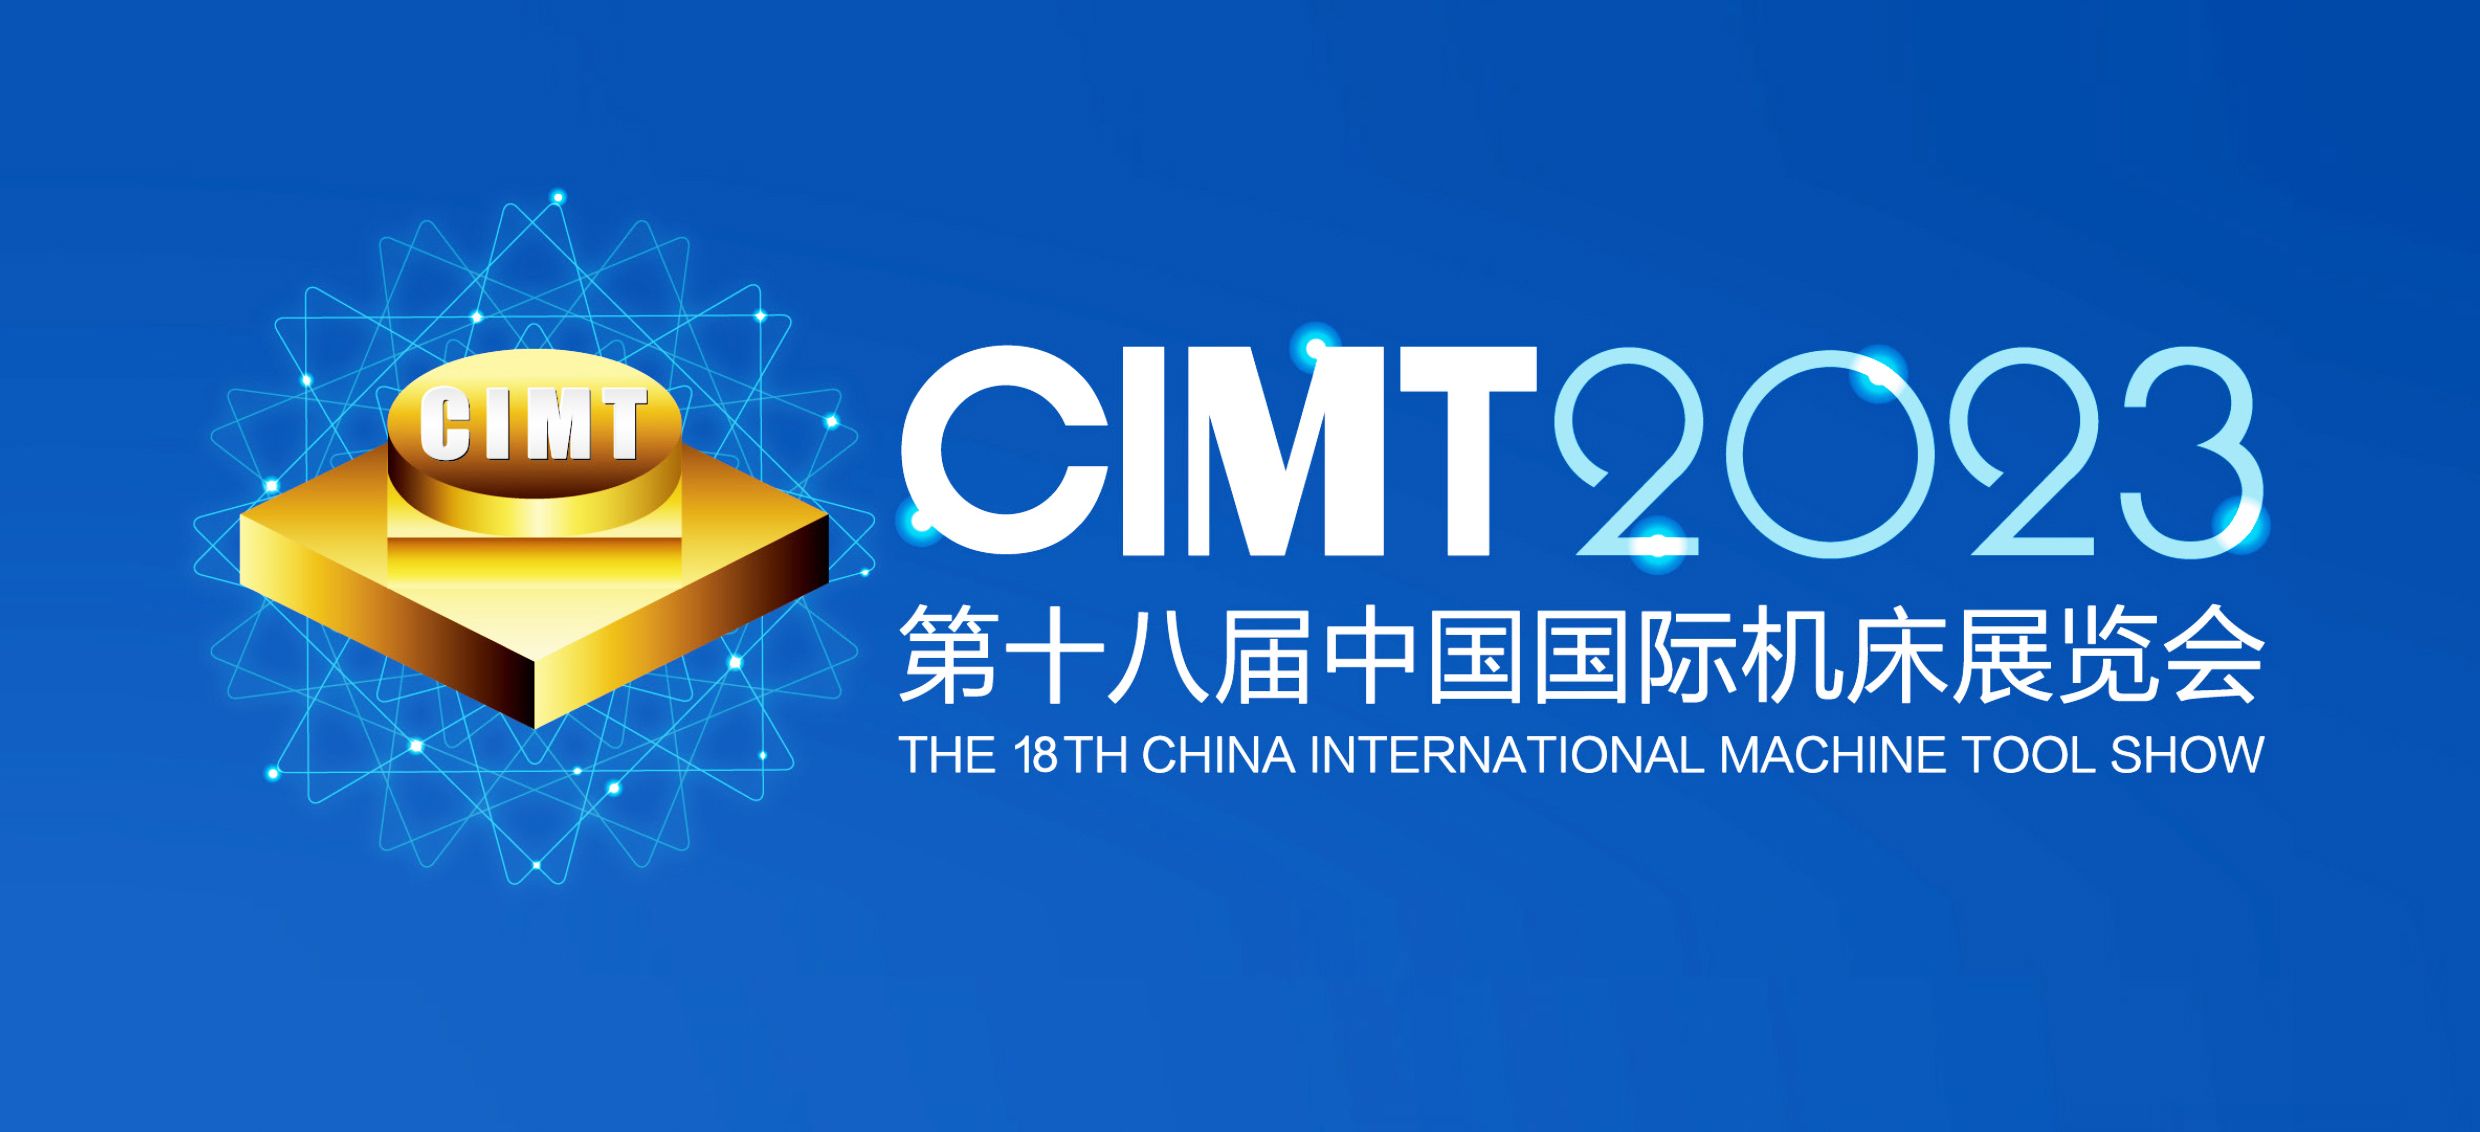 展會邀請|4月10-15第十八屆中國國際機床展覽會通錦精密與您相約北京！